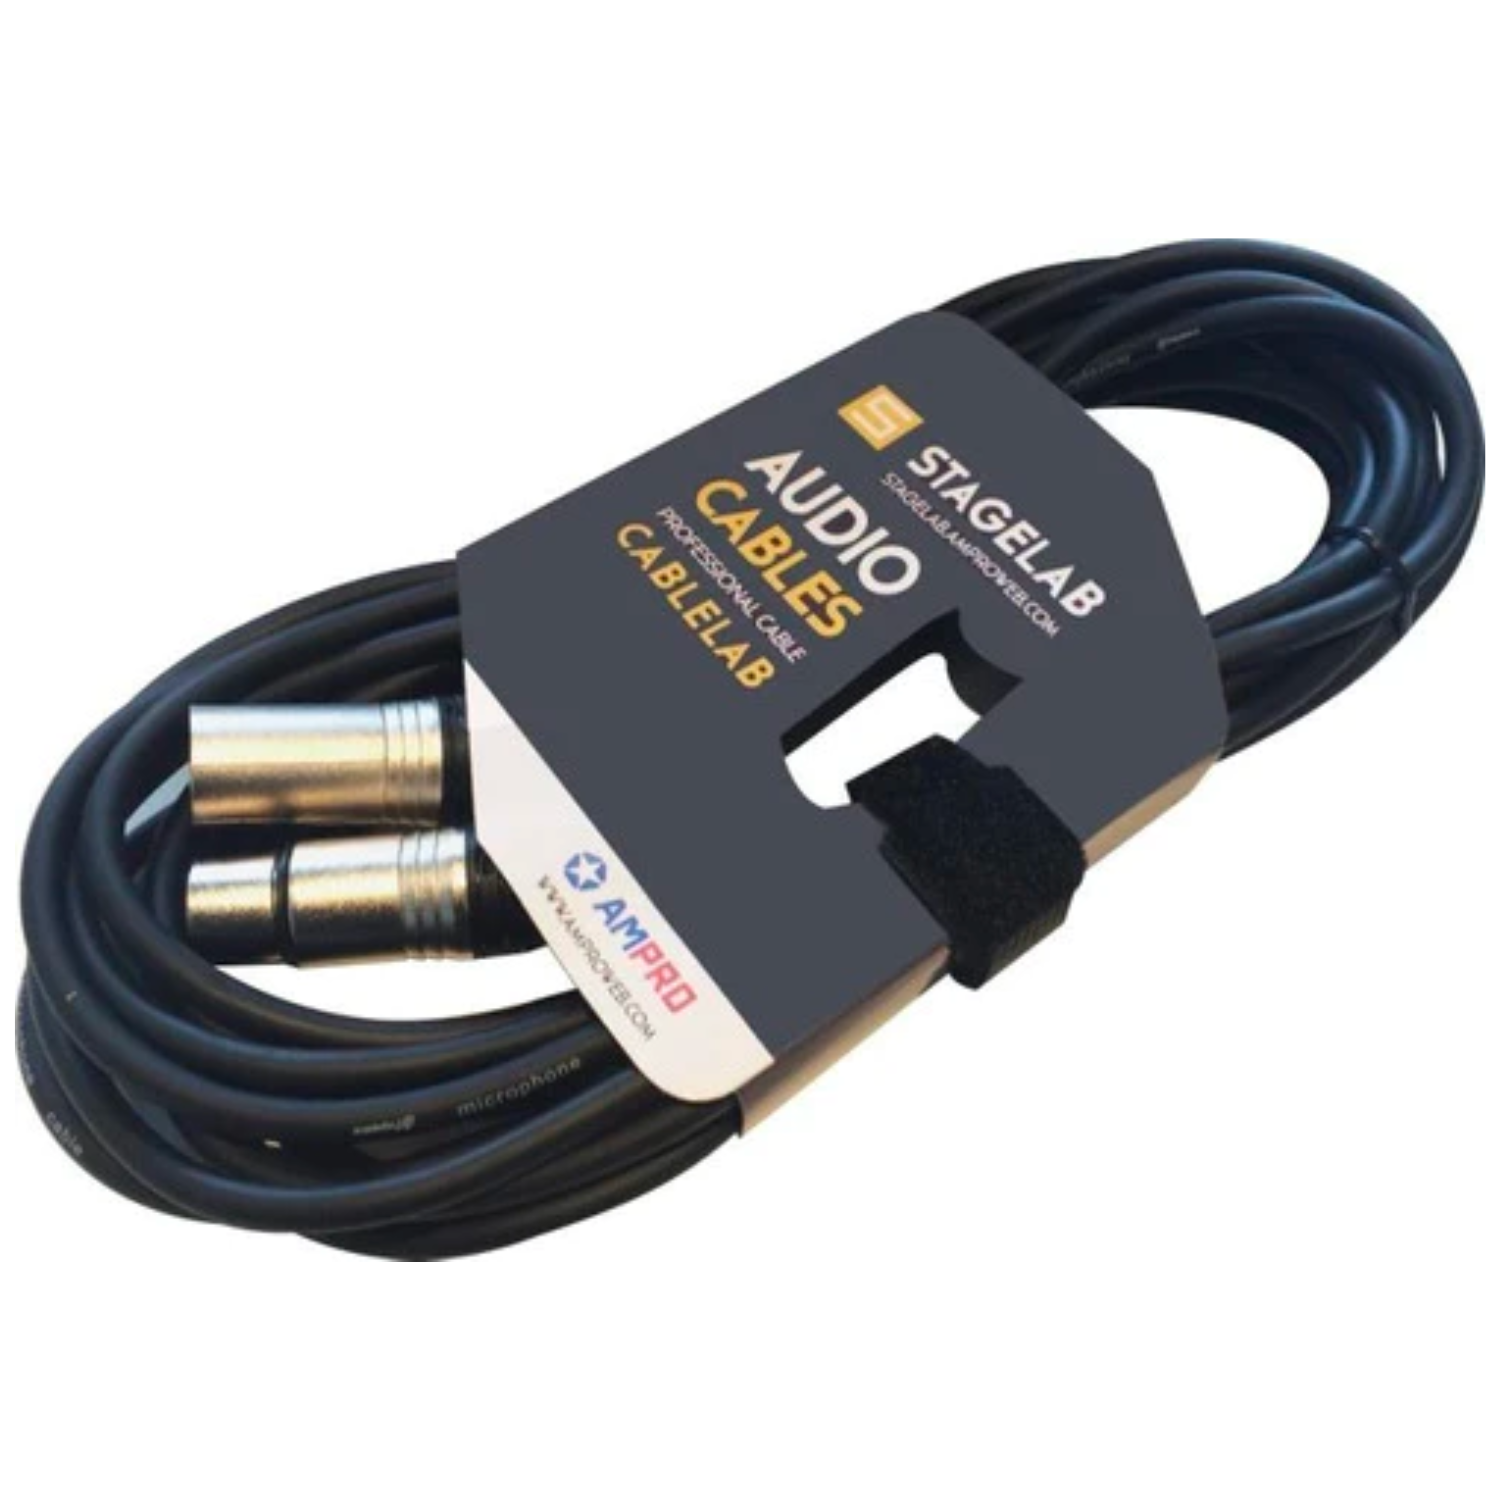 CABLE XLR 5 METROS - Cable de Audio Balanceado XLR-XLR